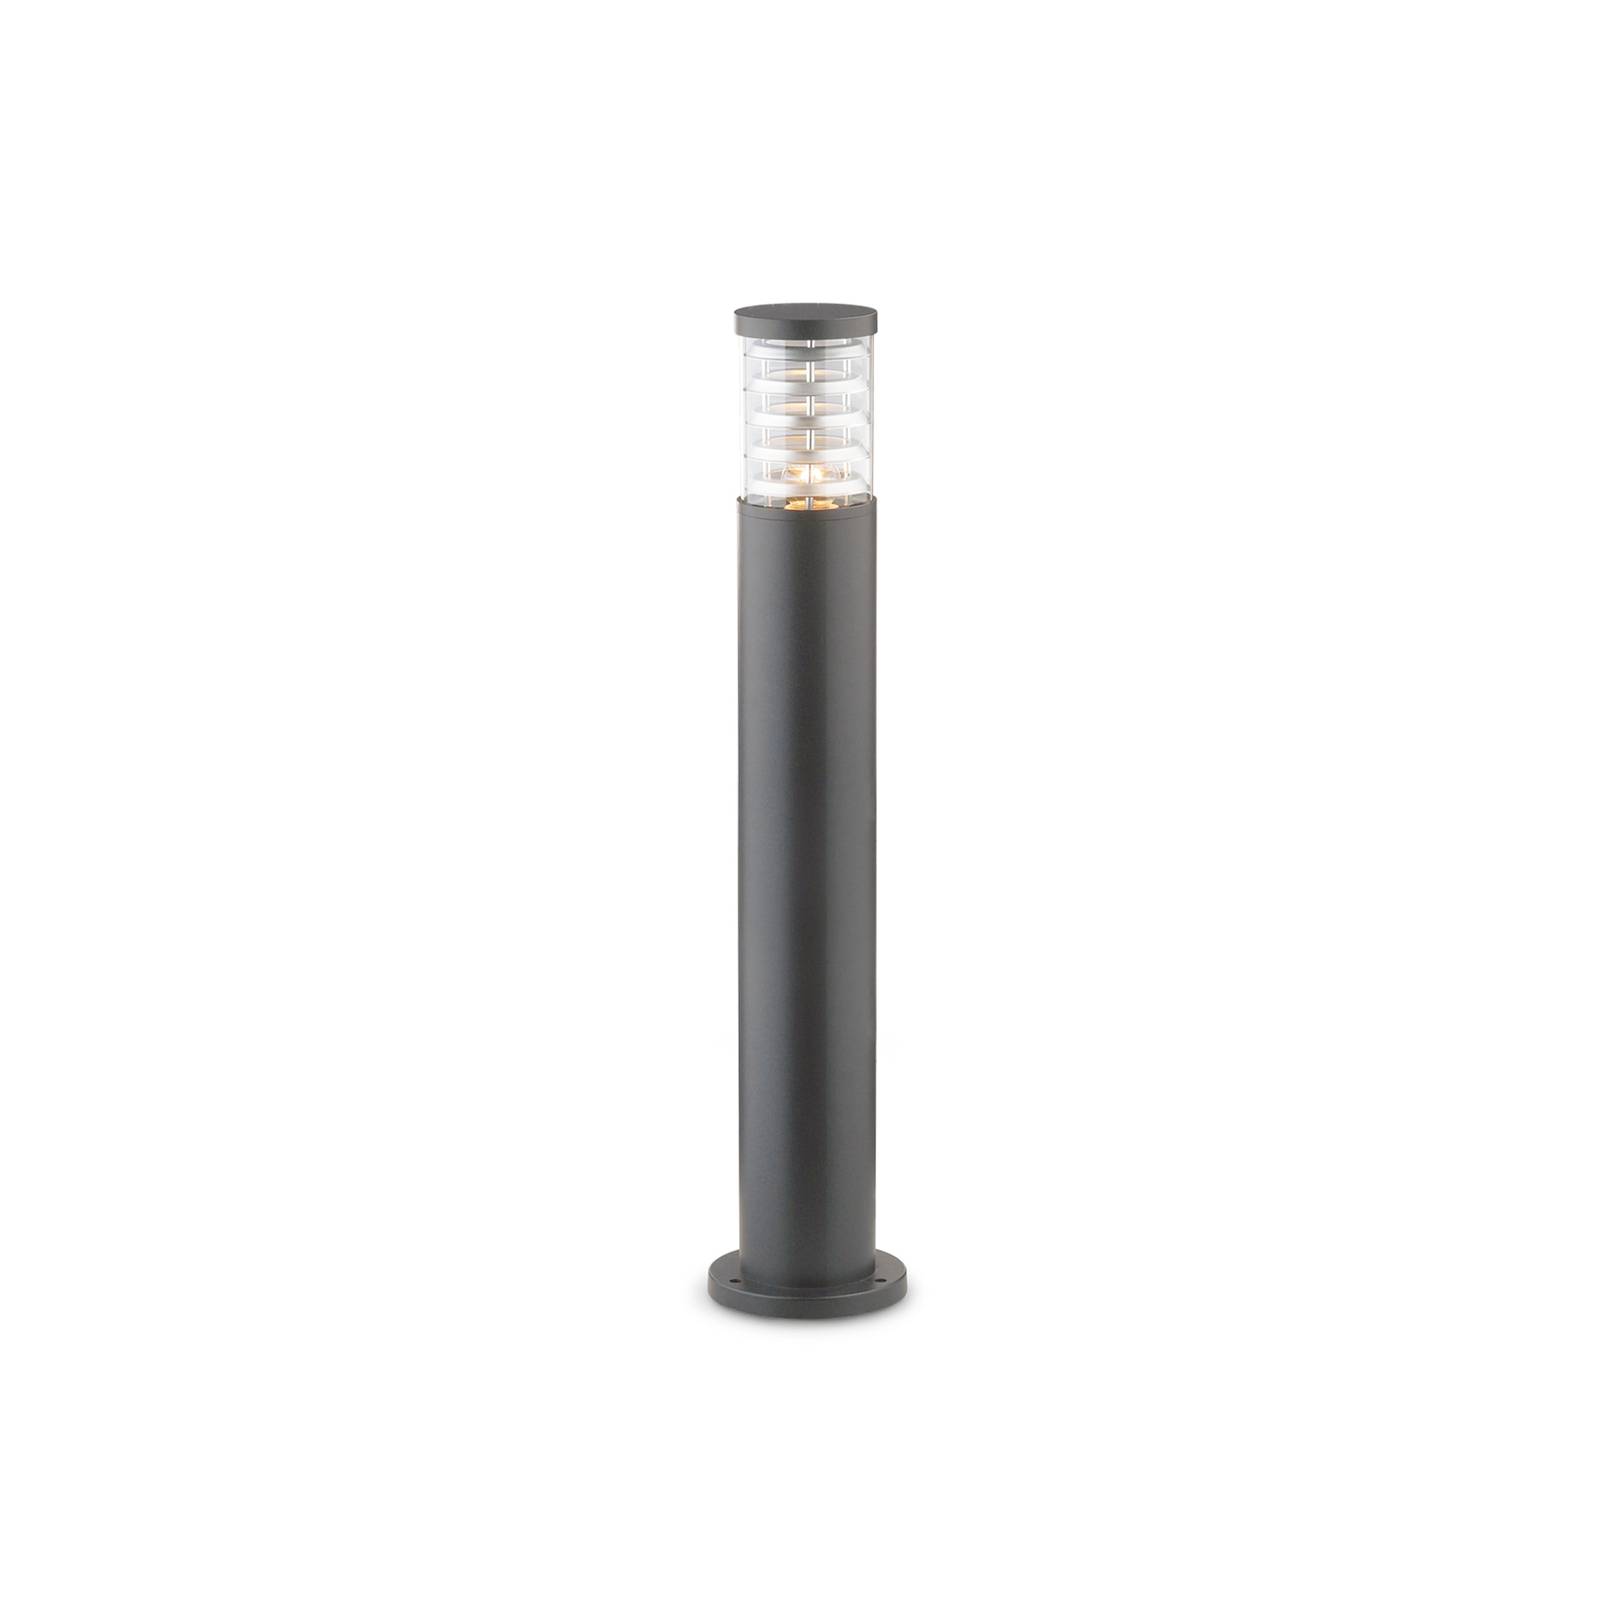 Ideallux Světlo na cestu Ideal Lux Tronco antracitový hliník výška 80,5 cm